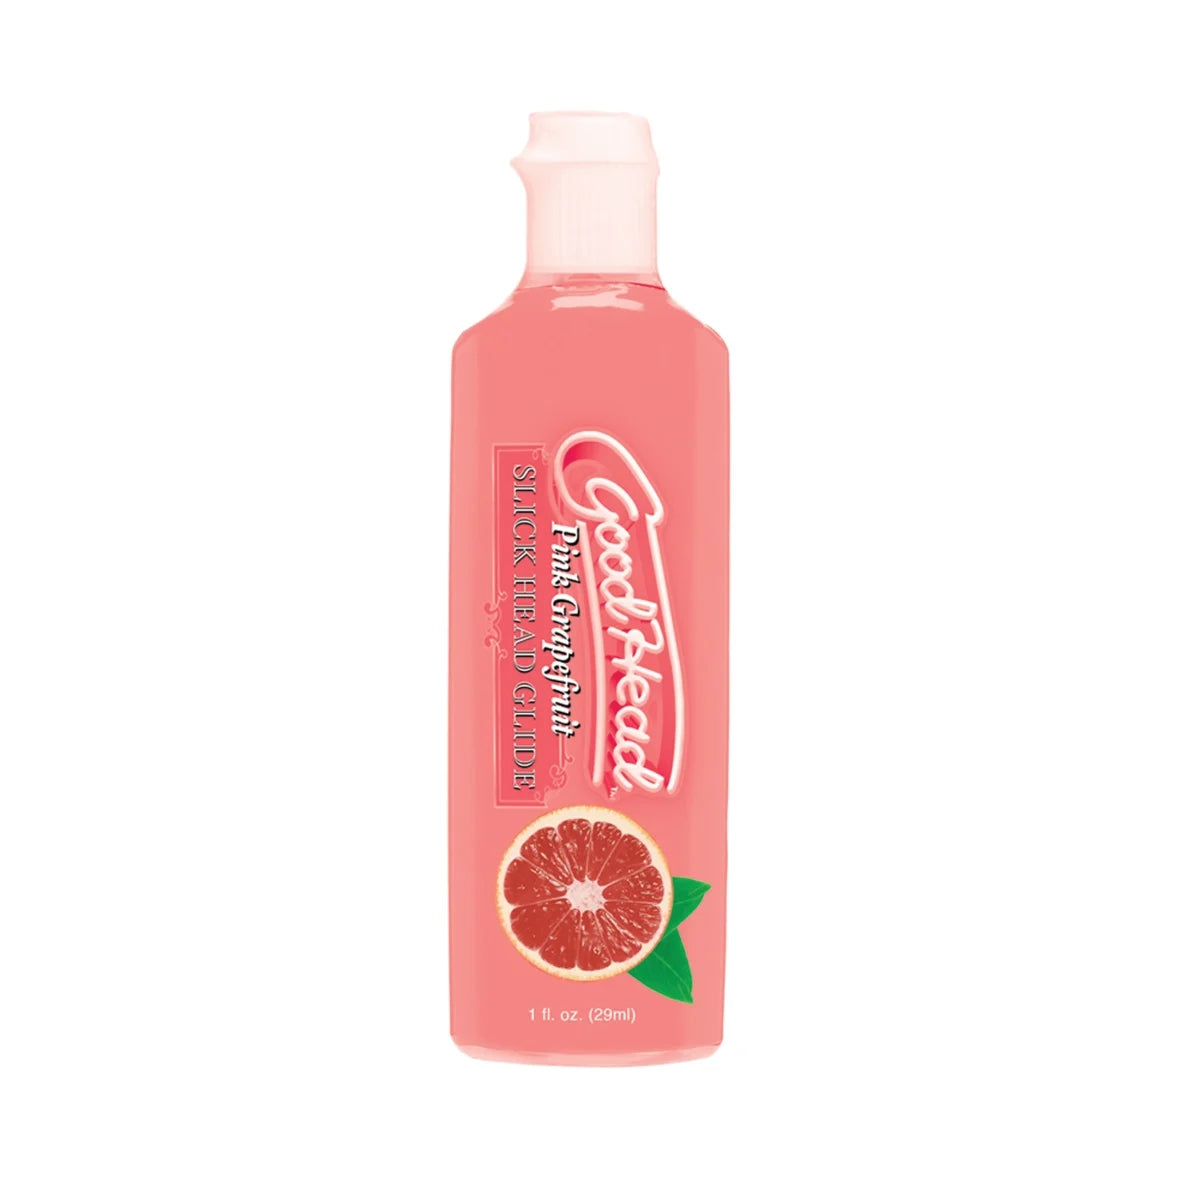 a bottle of pink grapefruit hand sanitizer